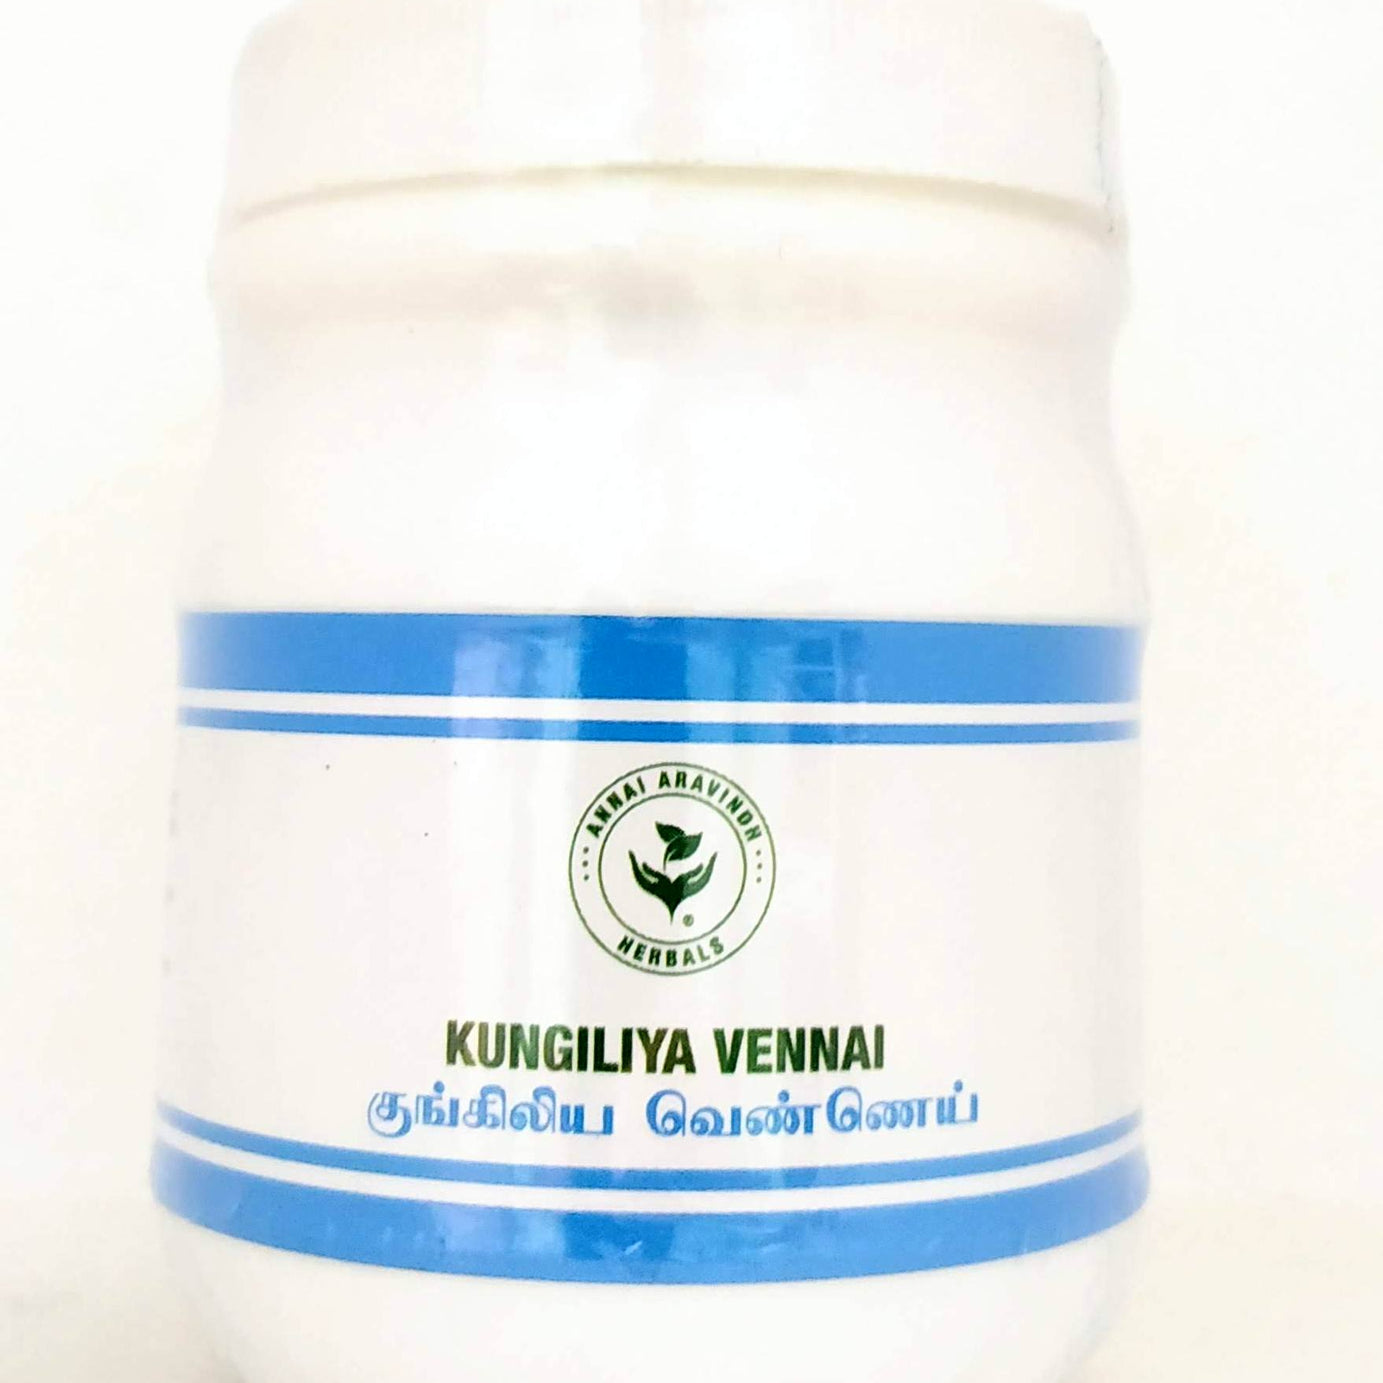 Shop Kungiliya vennai 100gm at price 50.00 from Annai Aravindh Online - Ayush Care